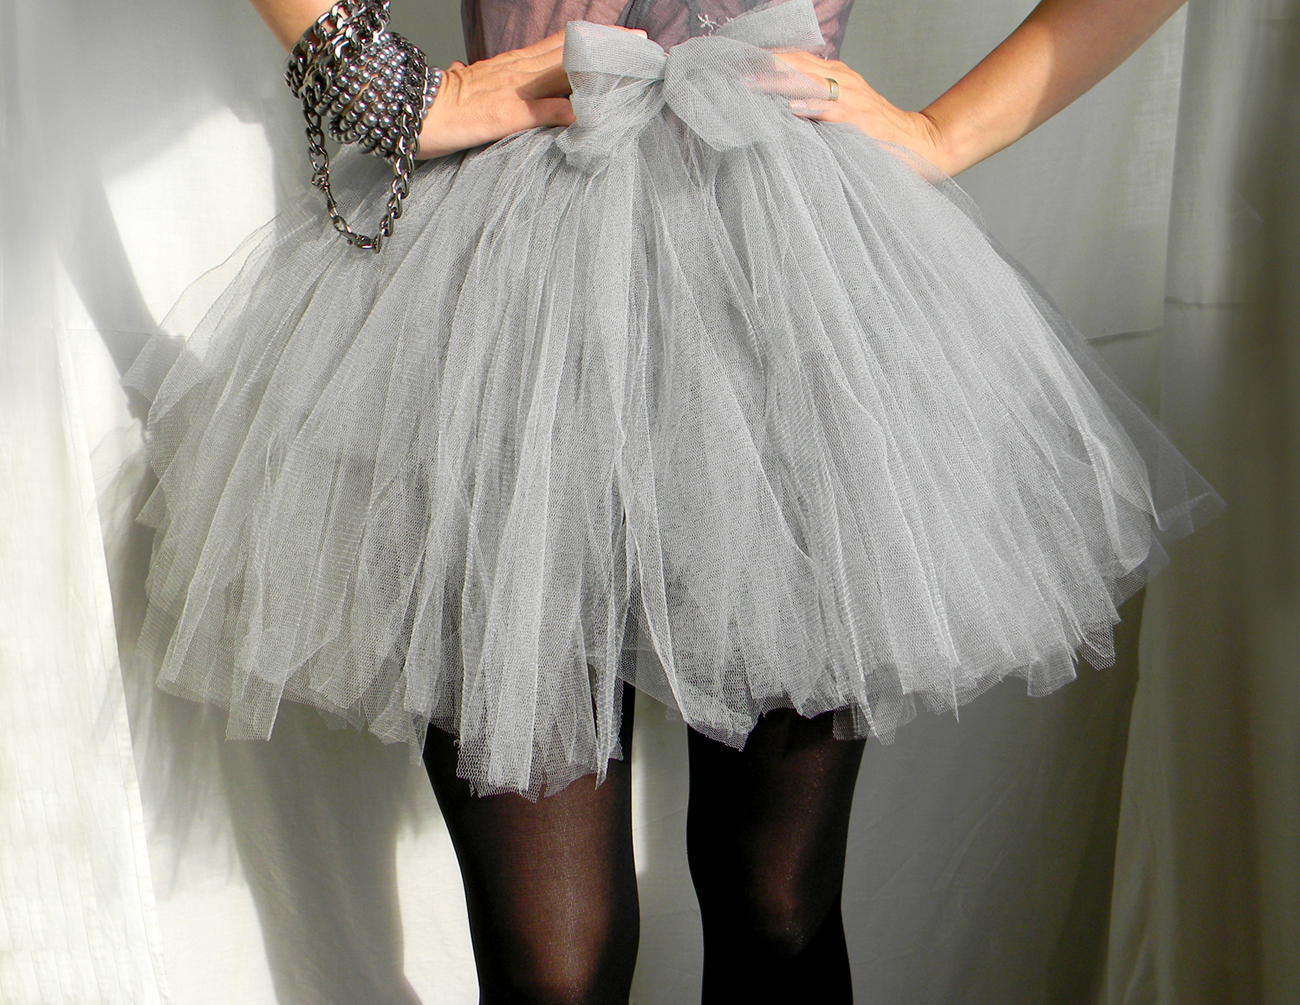 Ballerina Skirt Fashion 14